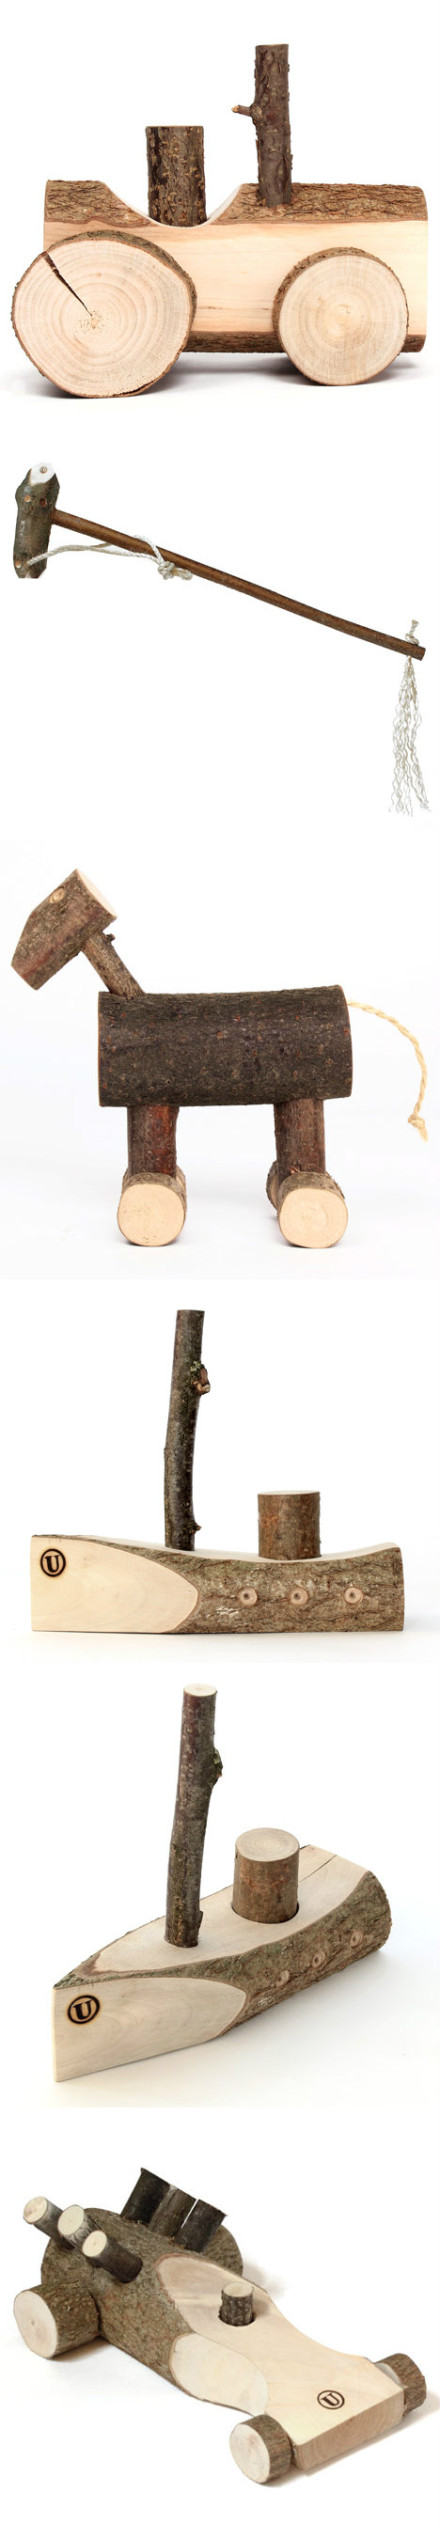 这些手工制作的木头玩具来自荷兰的设计机构usuals,因其有点粗犷显得